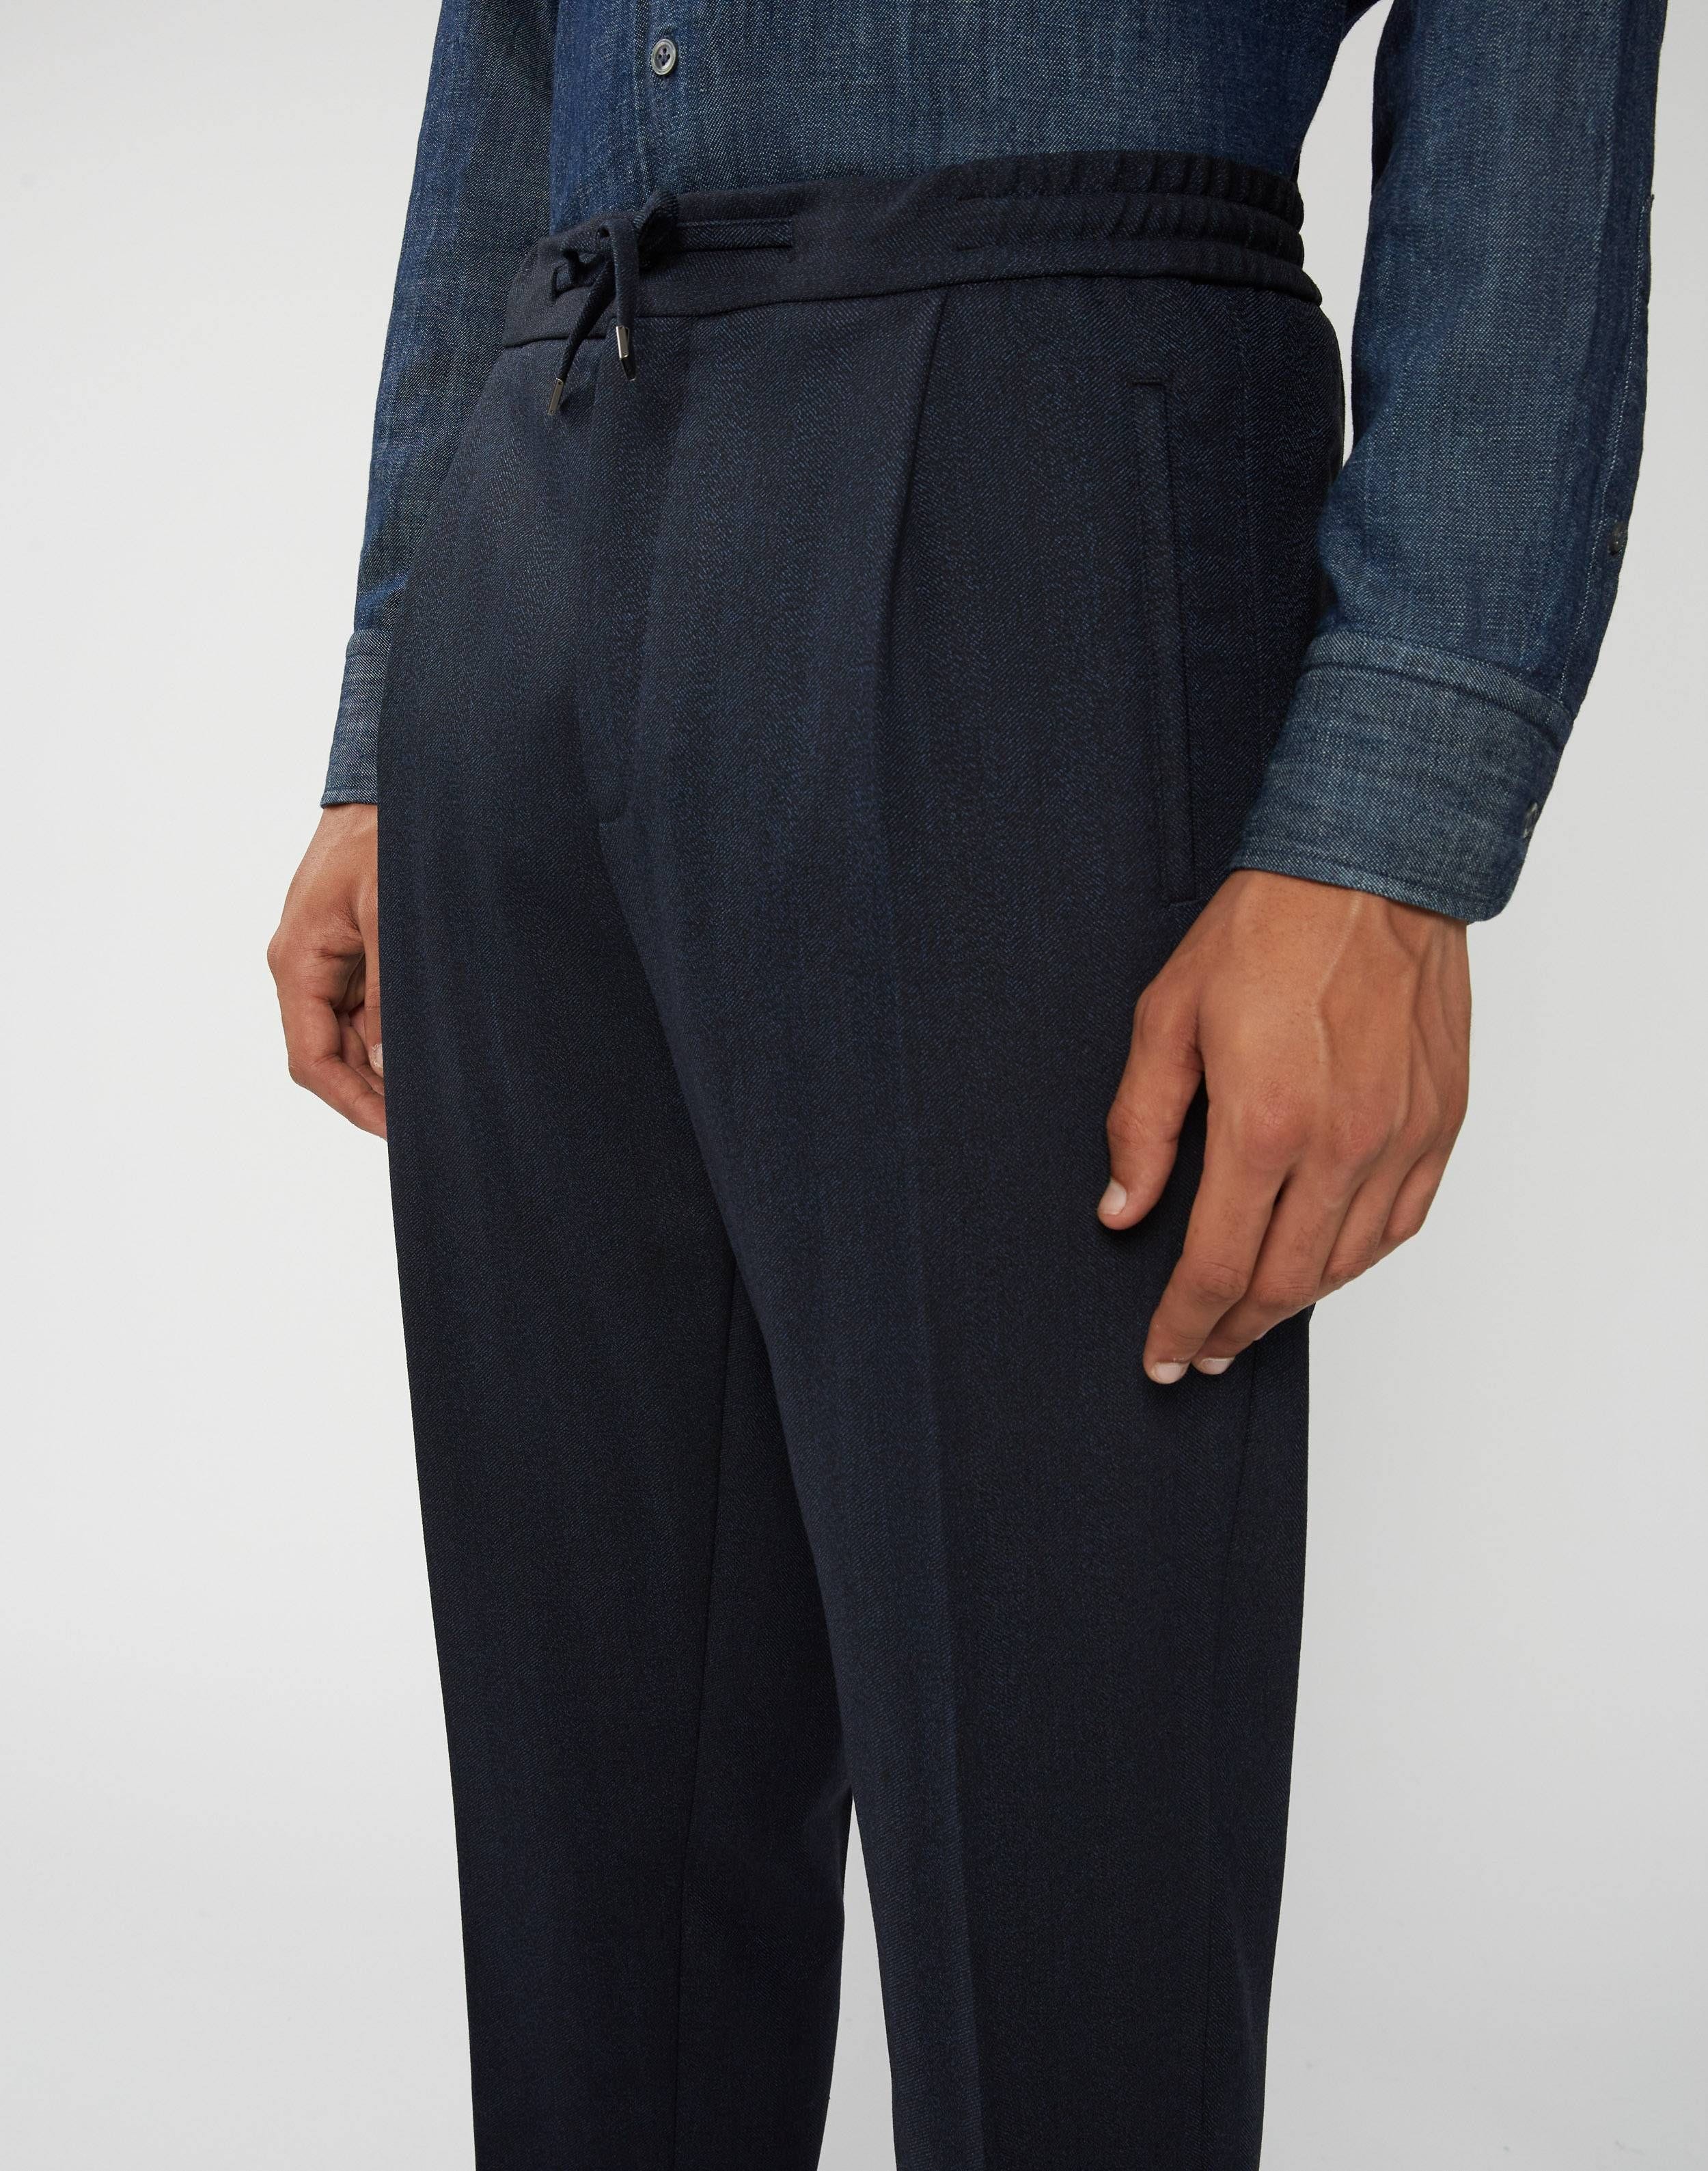 Pantalon coulissé motif à chevrons - Easy Wear 